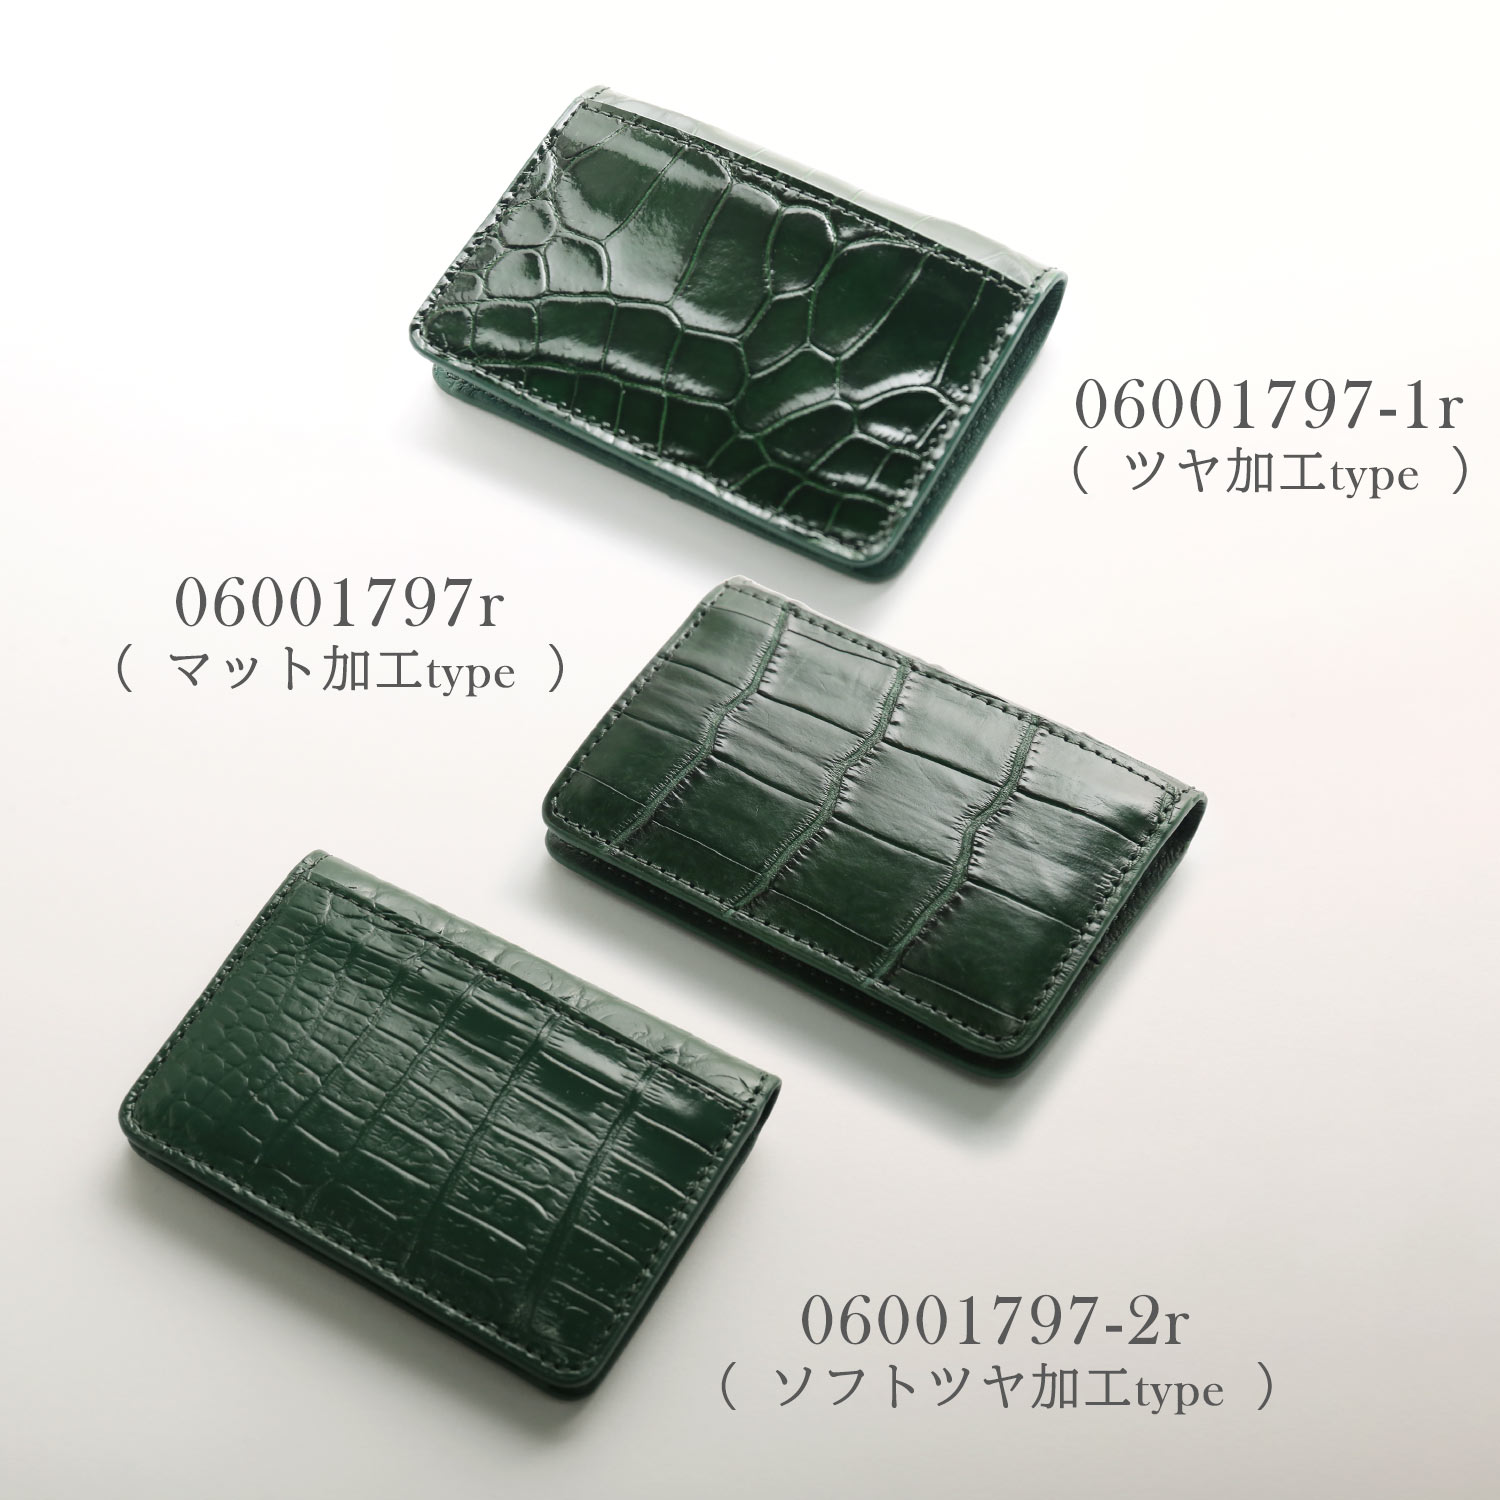 クロコダイル 小銭入れ ボックス型 マット加工 メンズ カード収納 軽量 小さい財布 コインケース ...